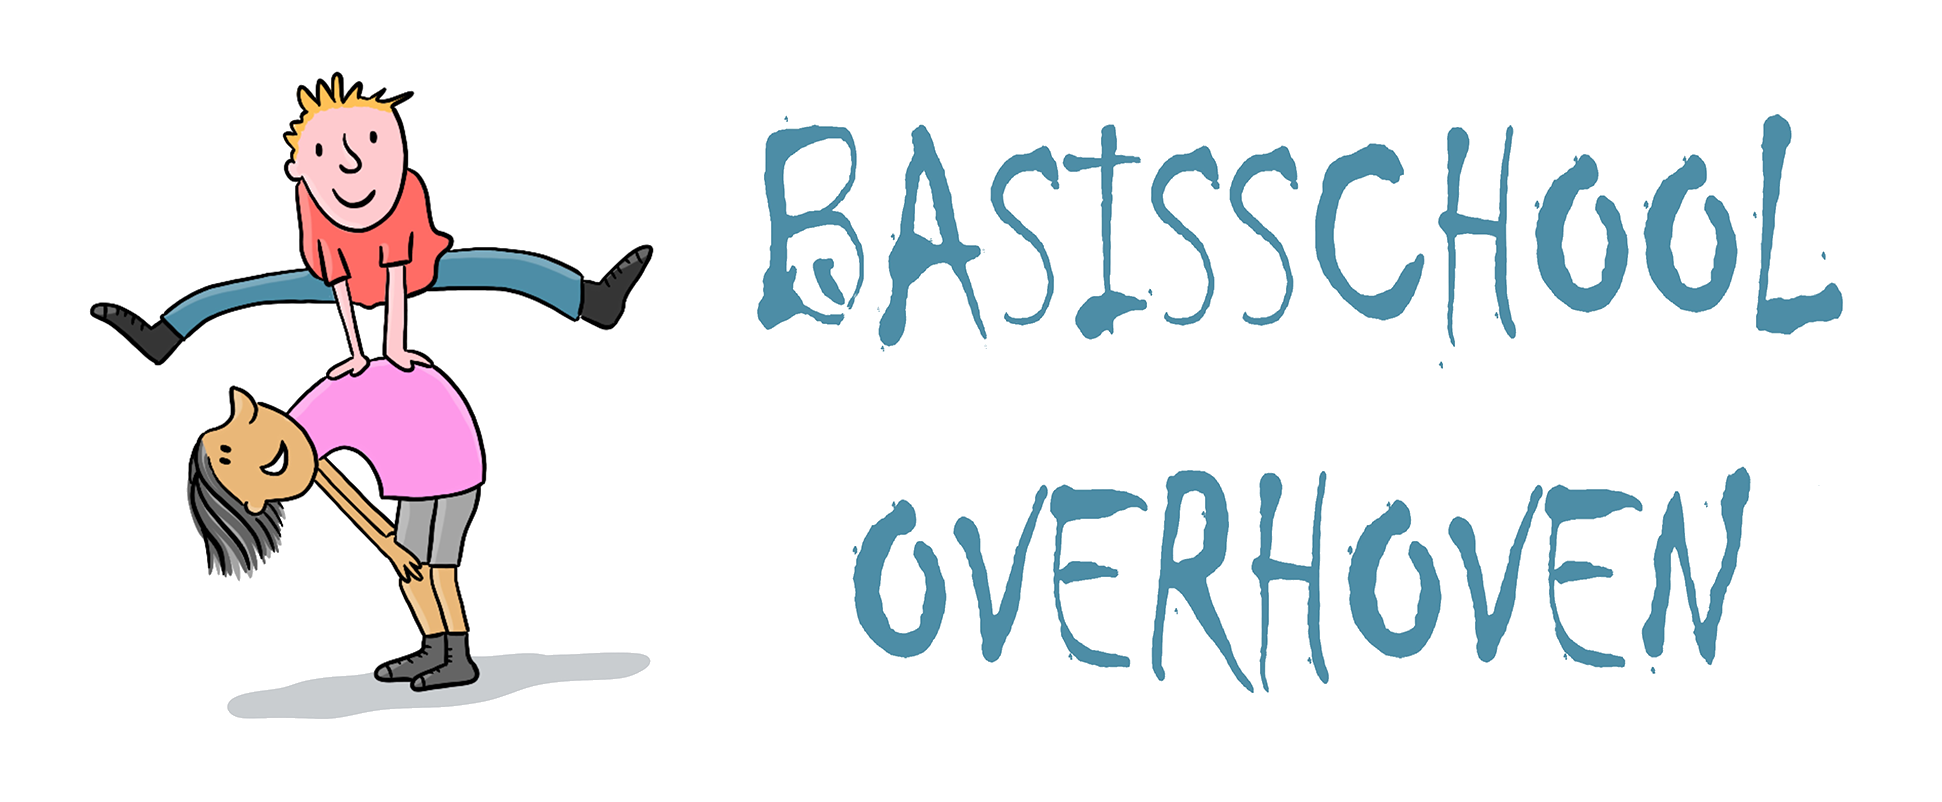 Basisschool Overhoven